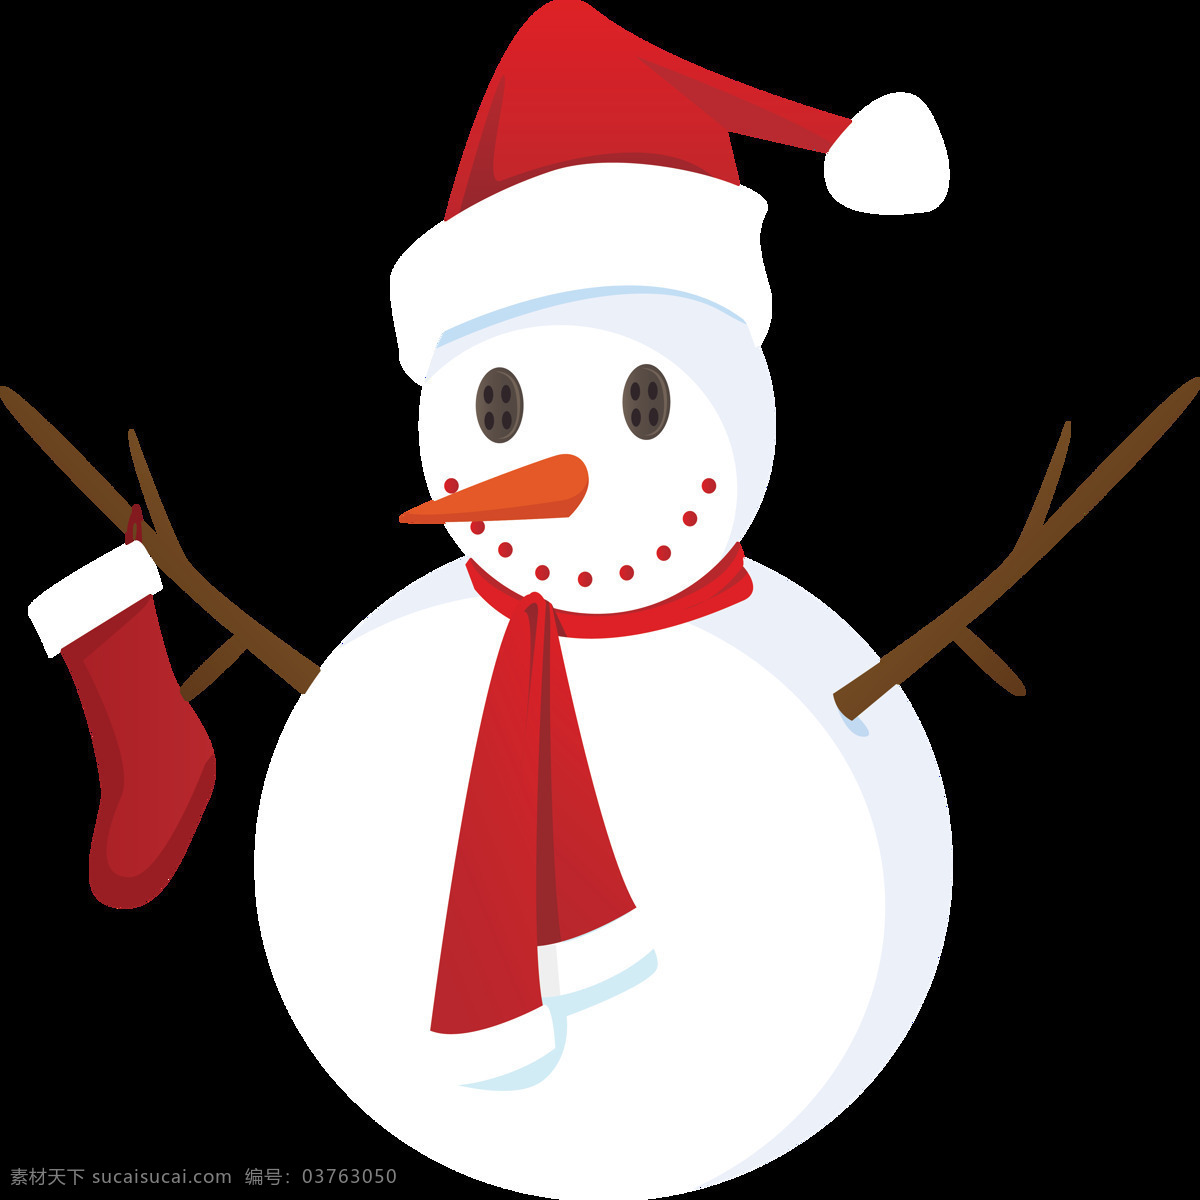 可爱 圣诞 雪人 元素 2018圣诞 冬季元素 节日元素 可爱雪人 设计元素 圣诞png 圣诞节 圣诞节快乐 圣诞节装饰 圣诞装扮 雪人png 雪人元素